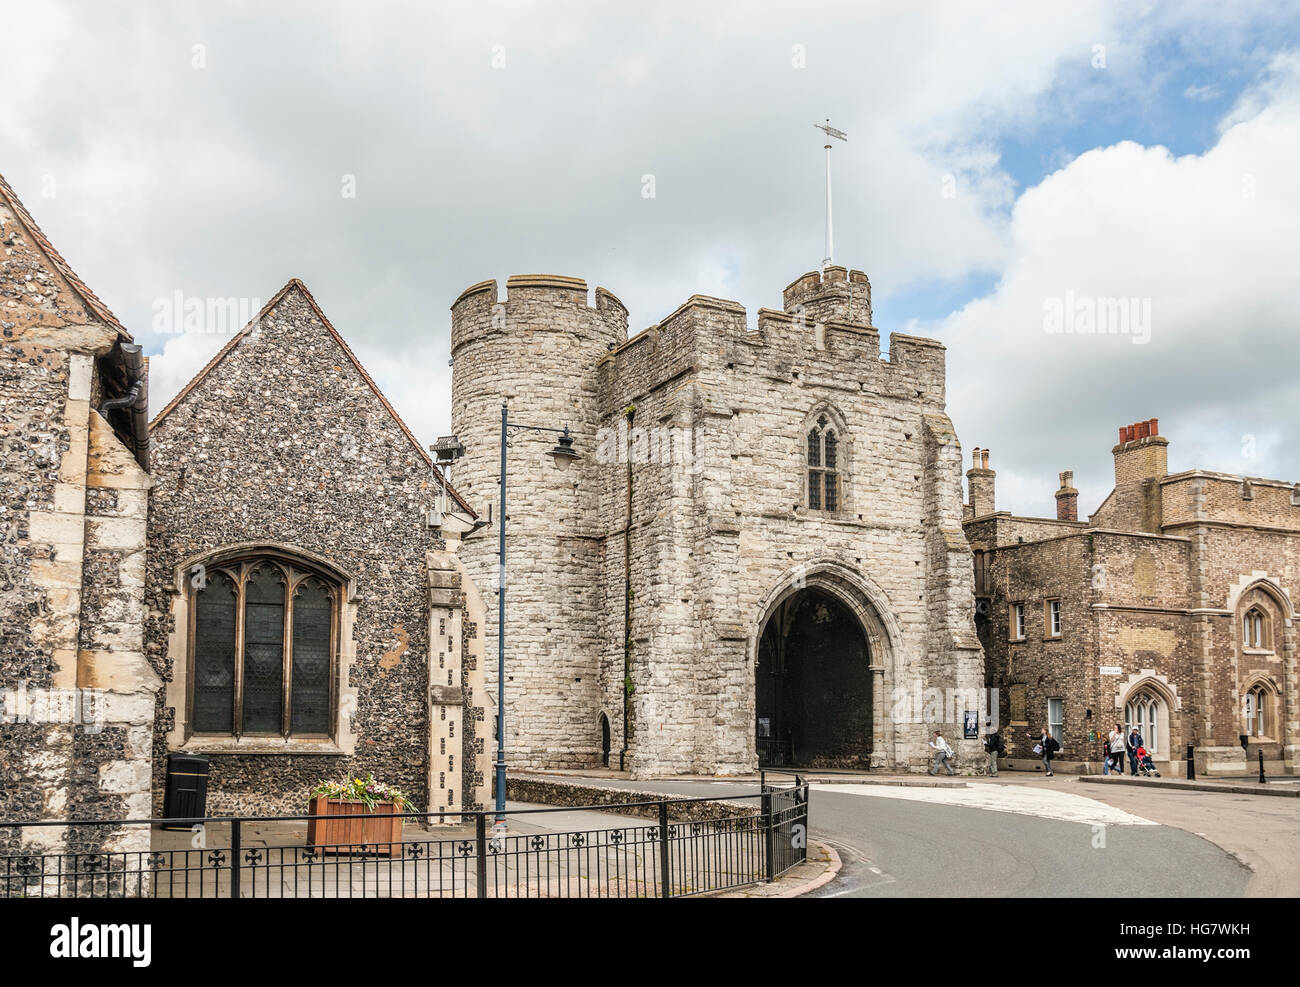 Le Westgate, un portier médiéval de Canterbury, Kent, Angleterre Banque D'Images